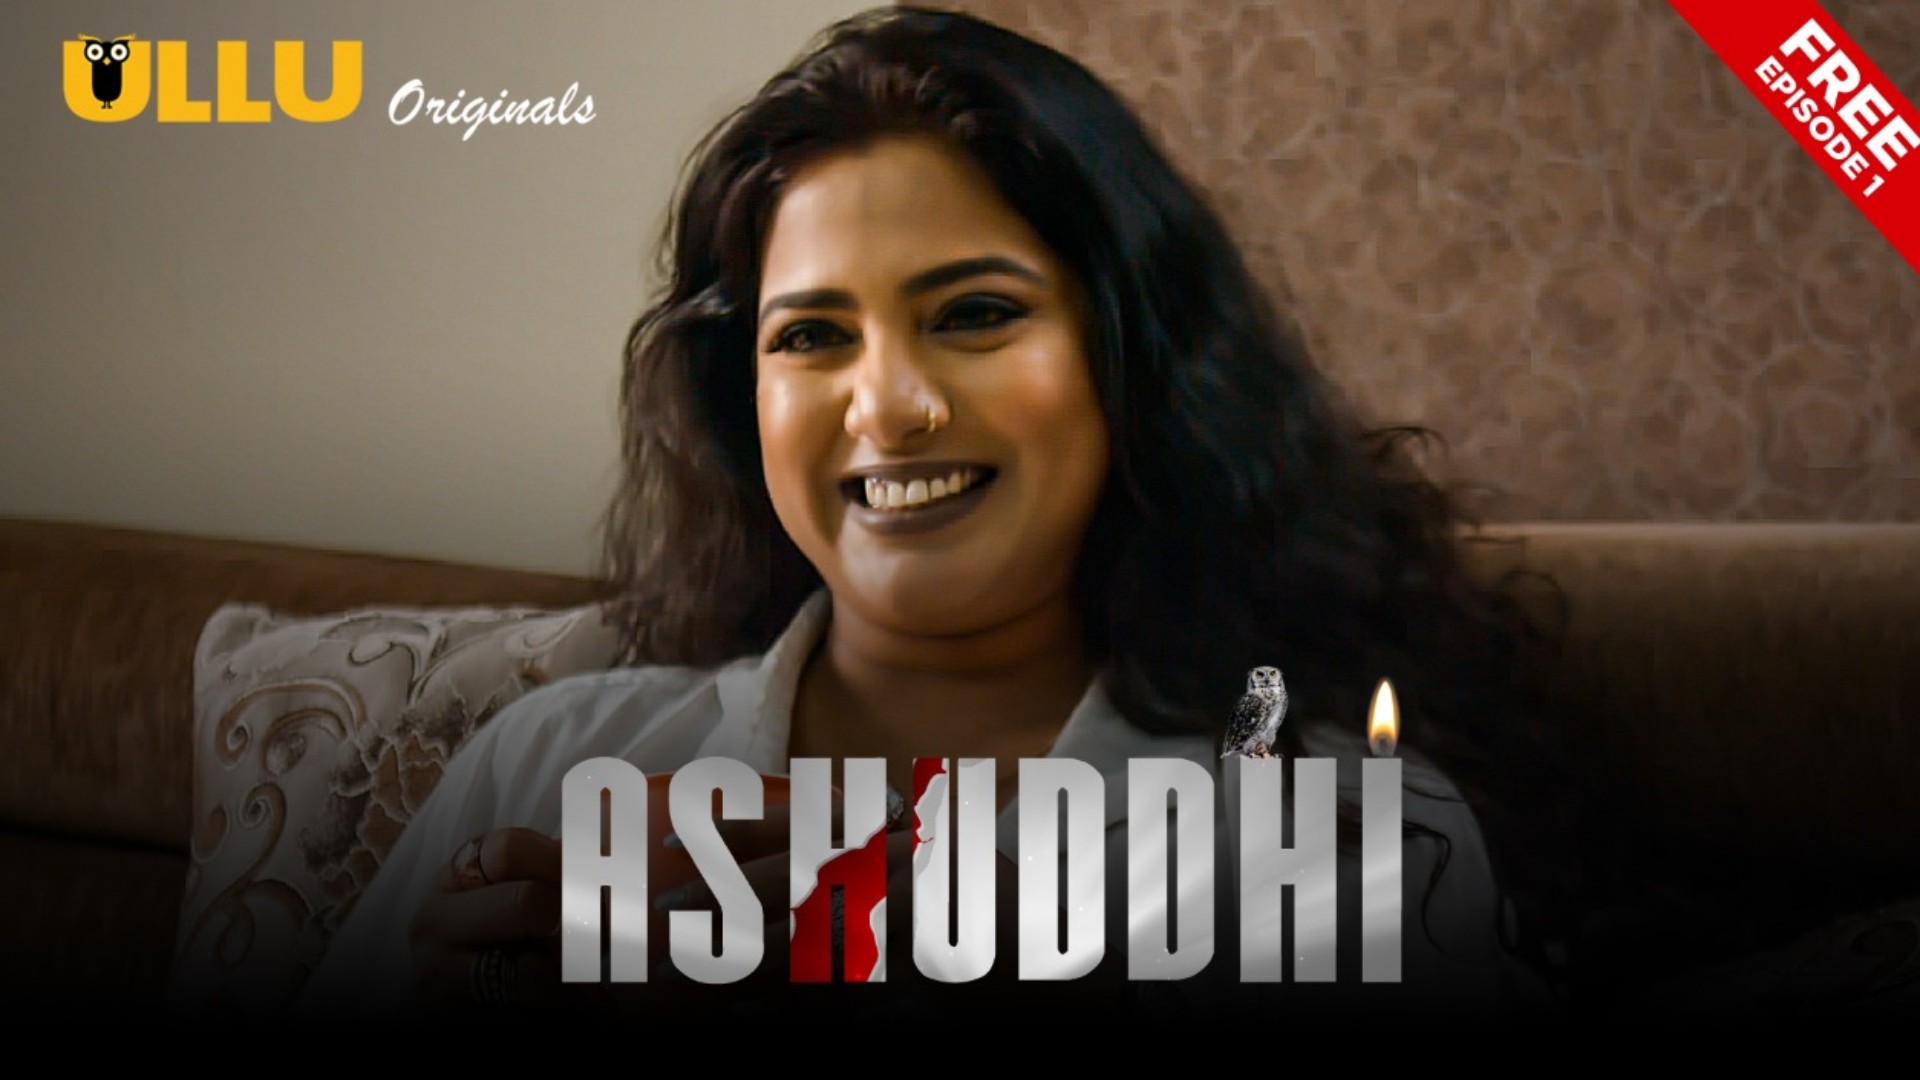 Ashuddhi 2020 Ullu Hindi Web Series S01E01 Watch